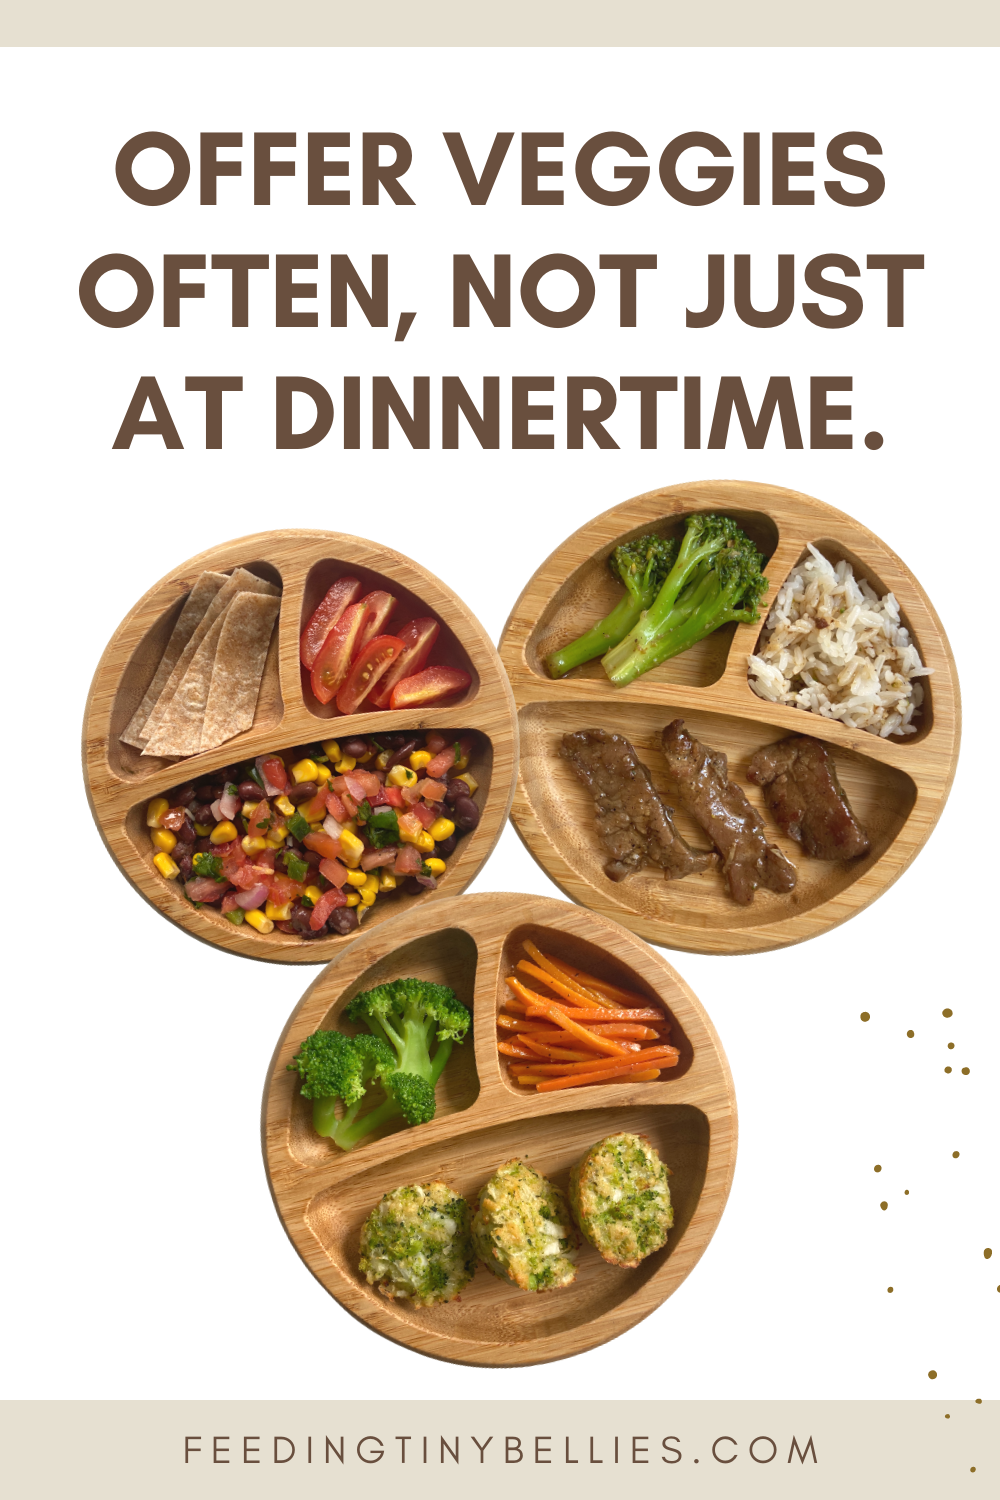 Offer veggies often, not just at dinnertime.